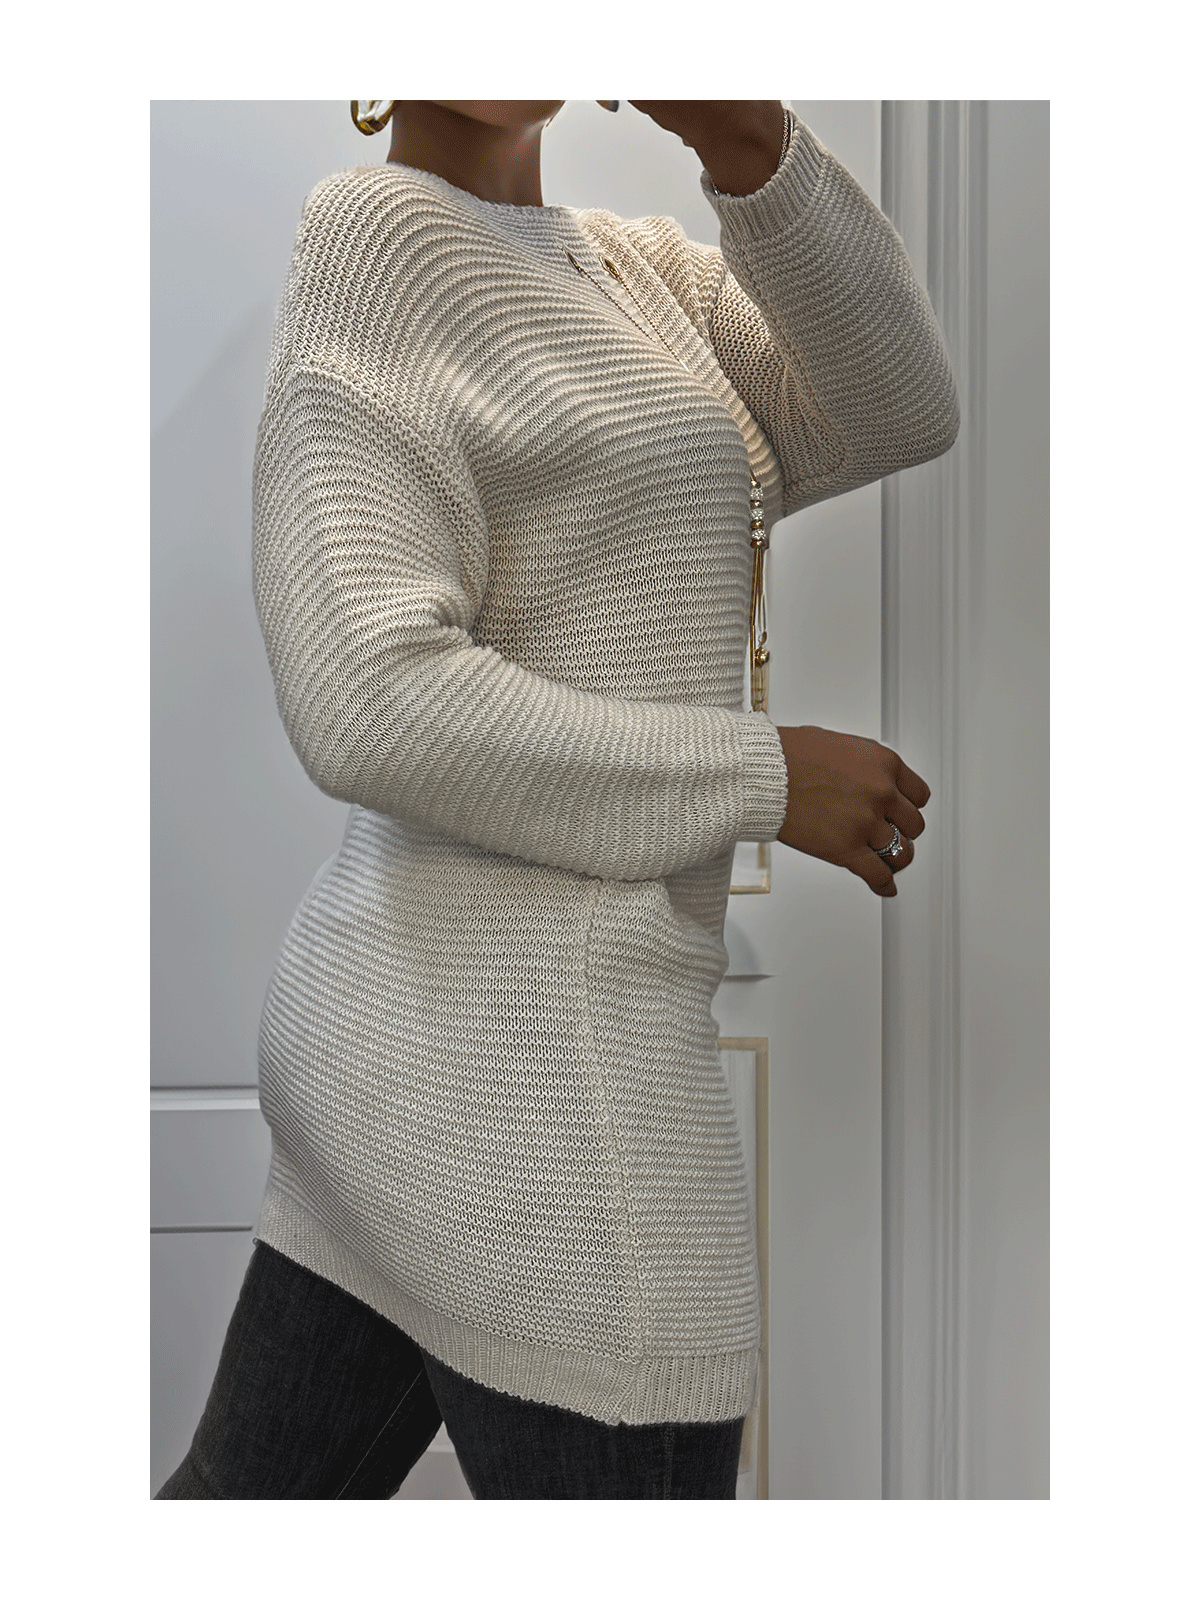 Tunique beige en tricot avec accessoires - 3